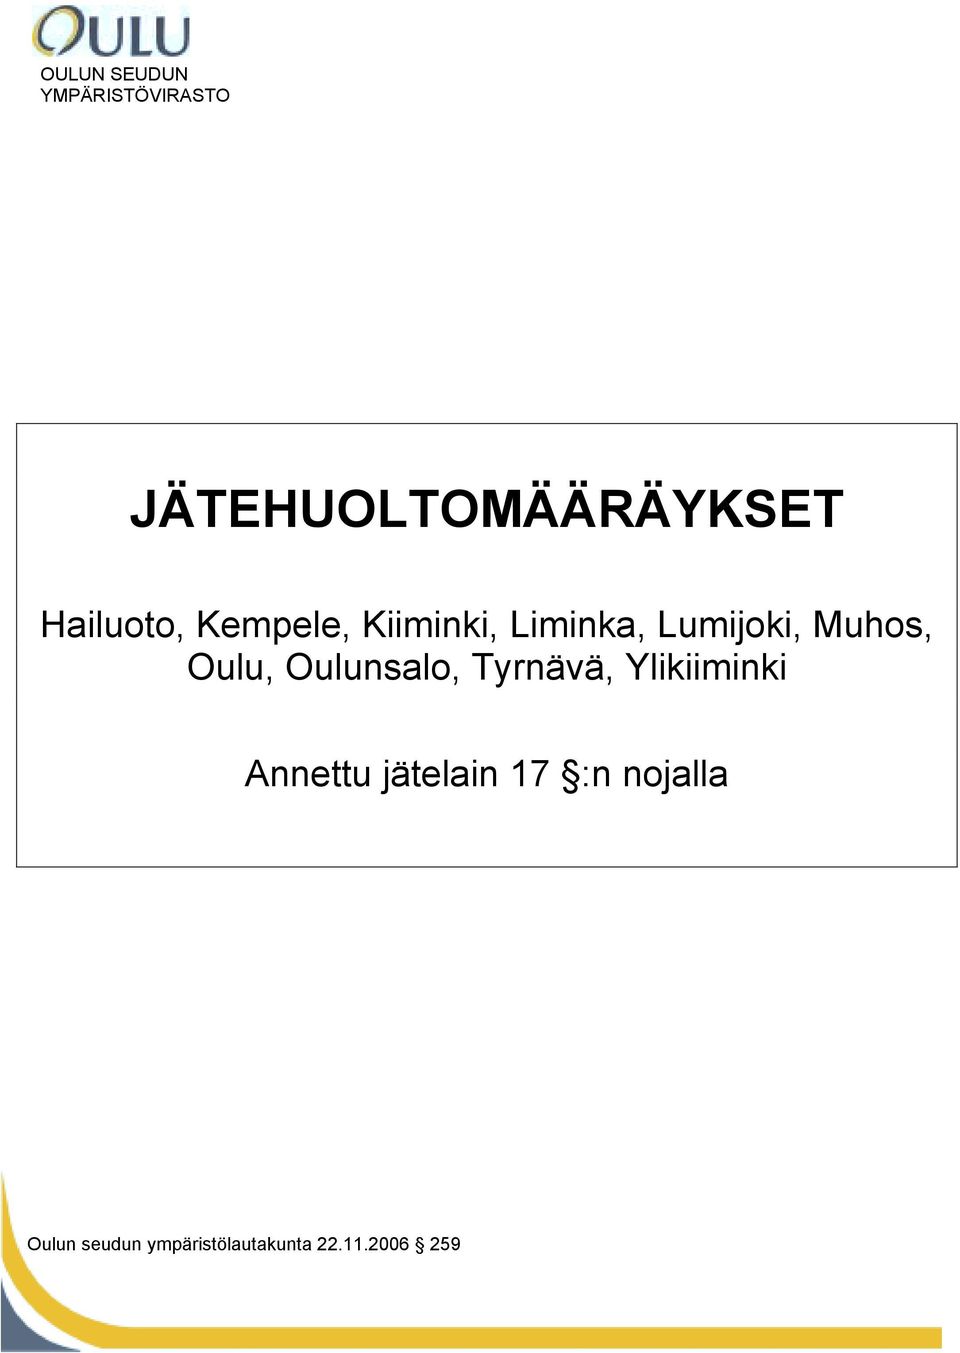 Oulu, Oulunsalo, Tyrnävä, Ylikiiminki Annettu jätelain